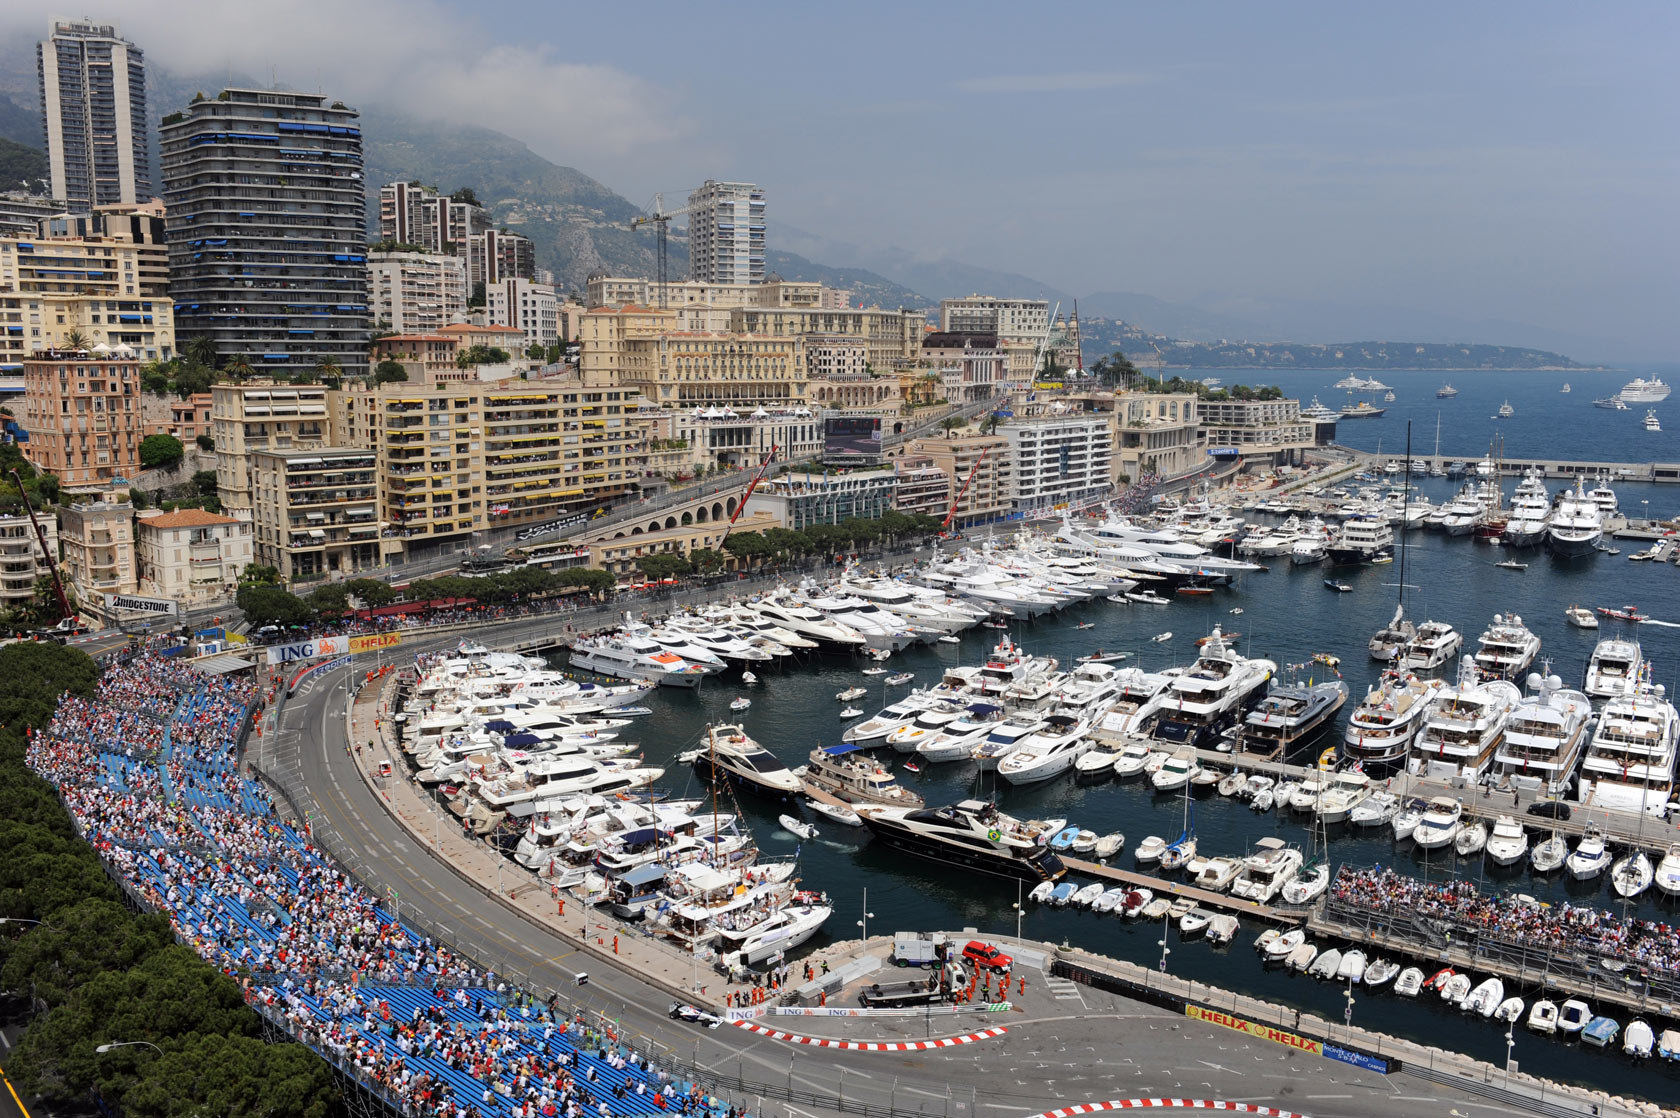 Circuit de Monaco - Monaco Grand Prix